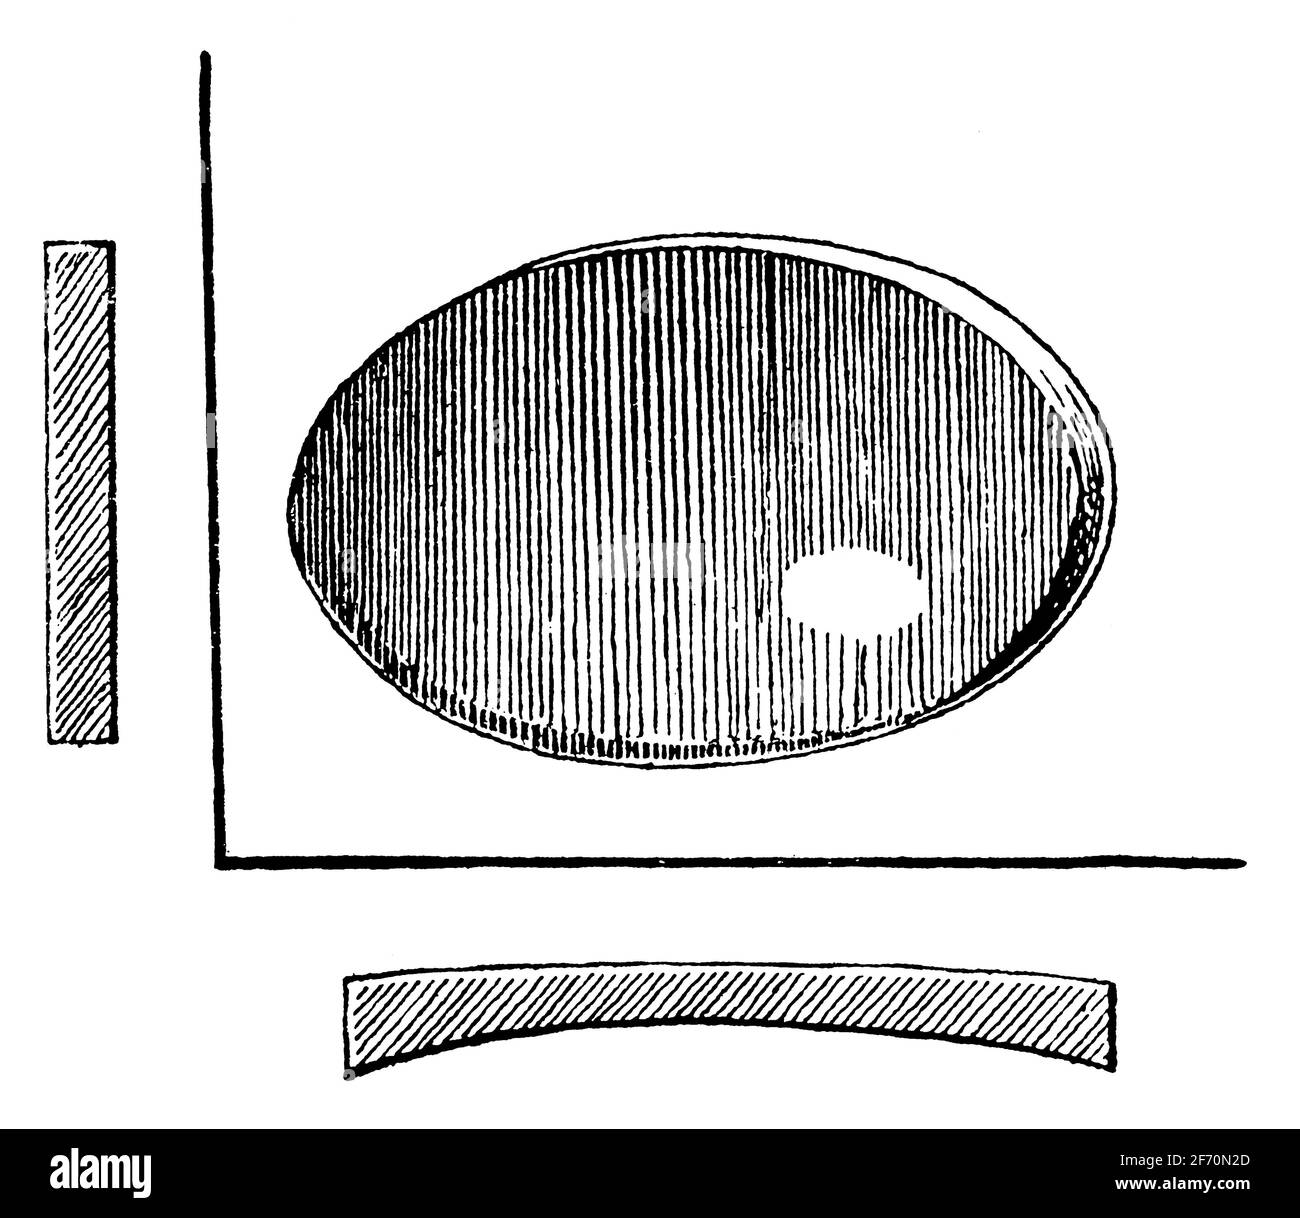 Lentille cylindrique concave en verre. Illustration du 19e siècle. Allemagne. Arrière-plan blanc. Banque D'Images